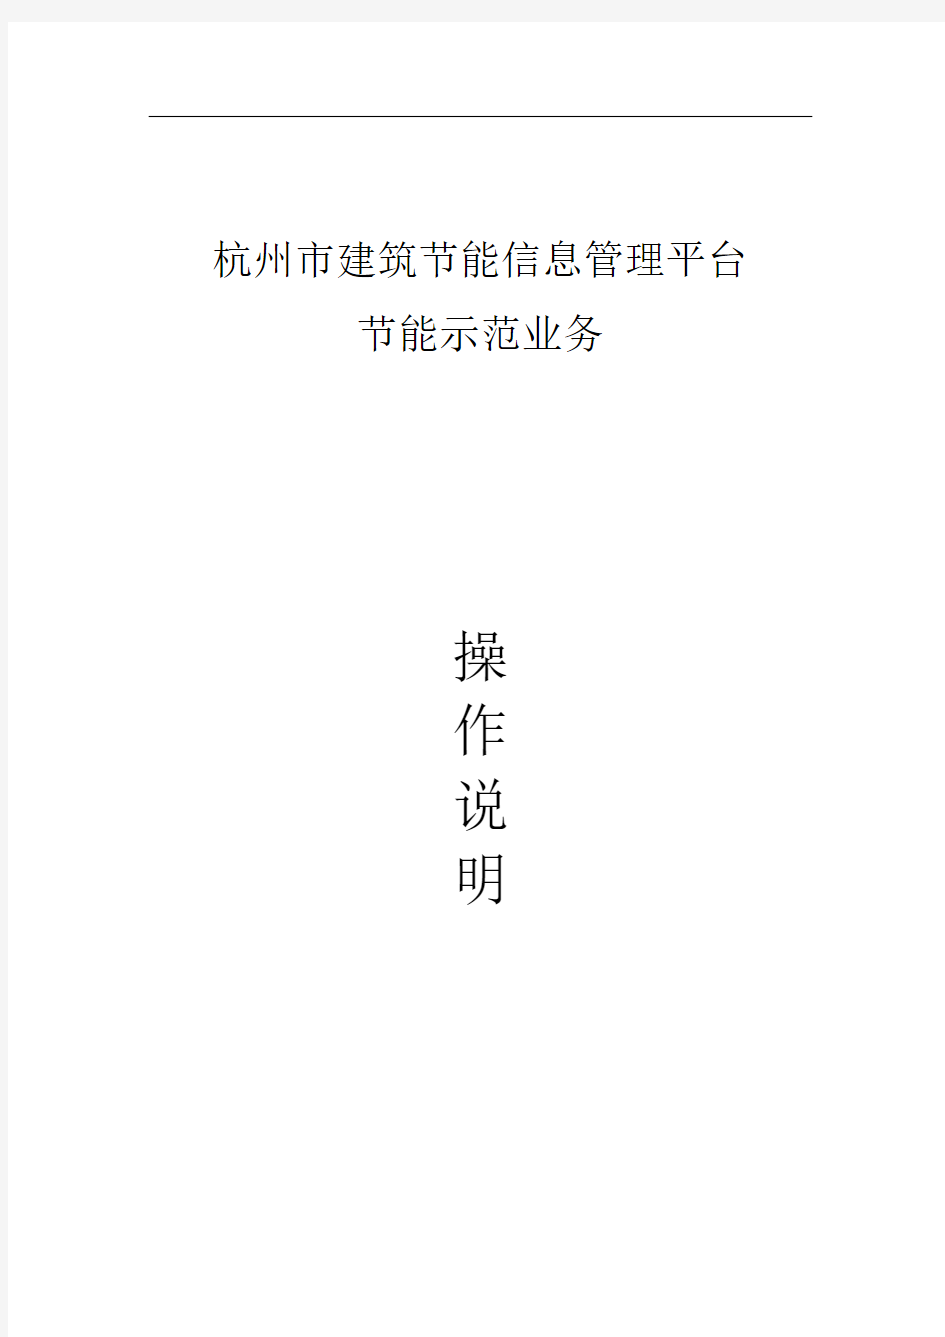 杭州市建筑节能信息管理平台业务系统操作手册